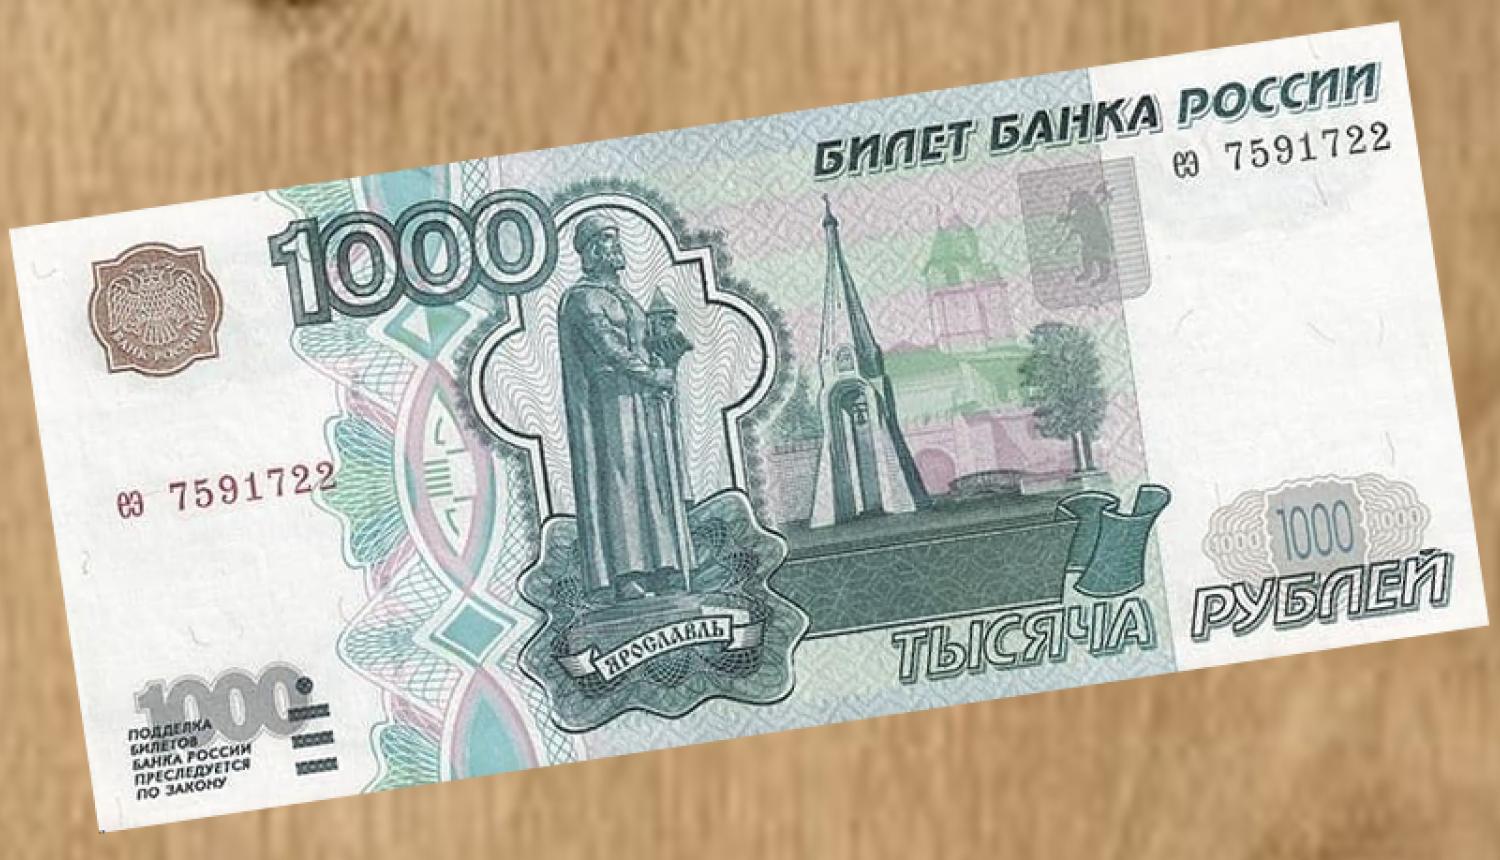 1000 Krievijas rubļu banknote